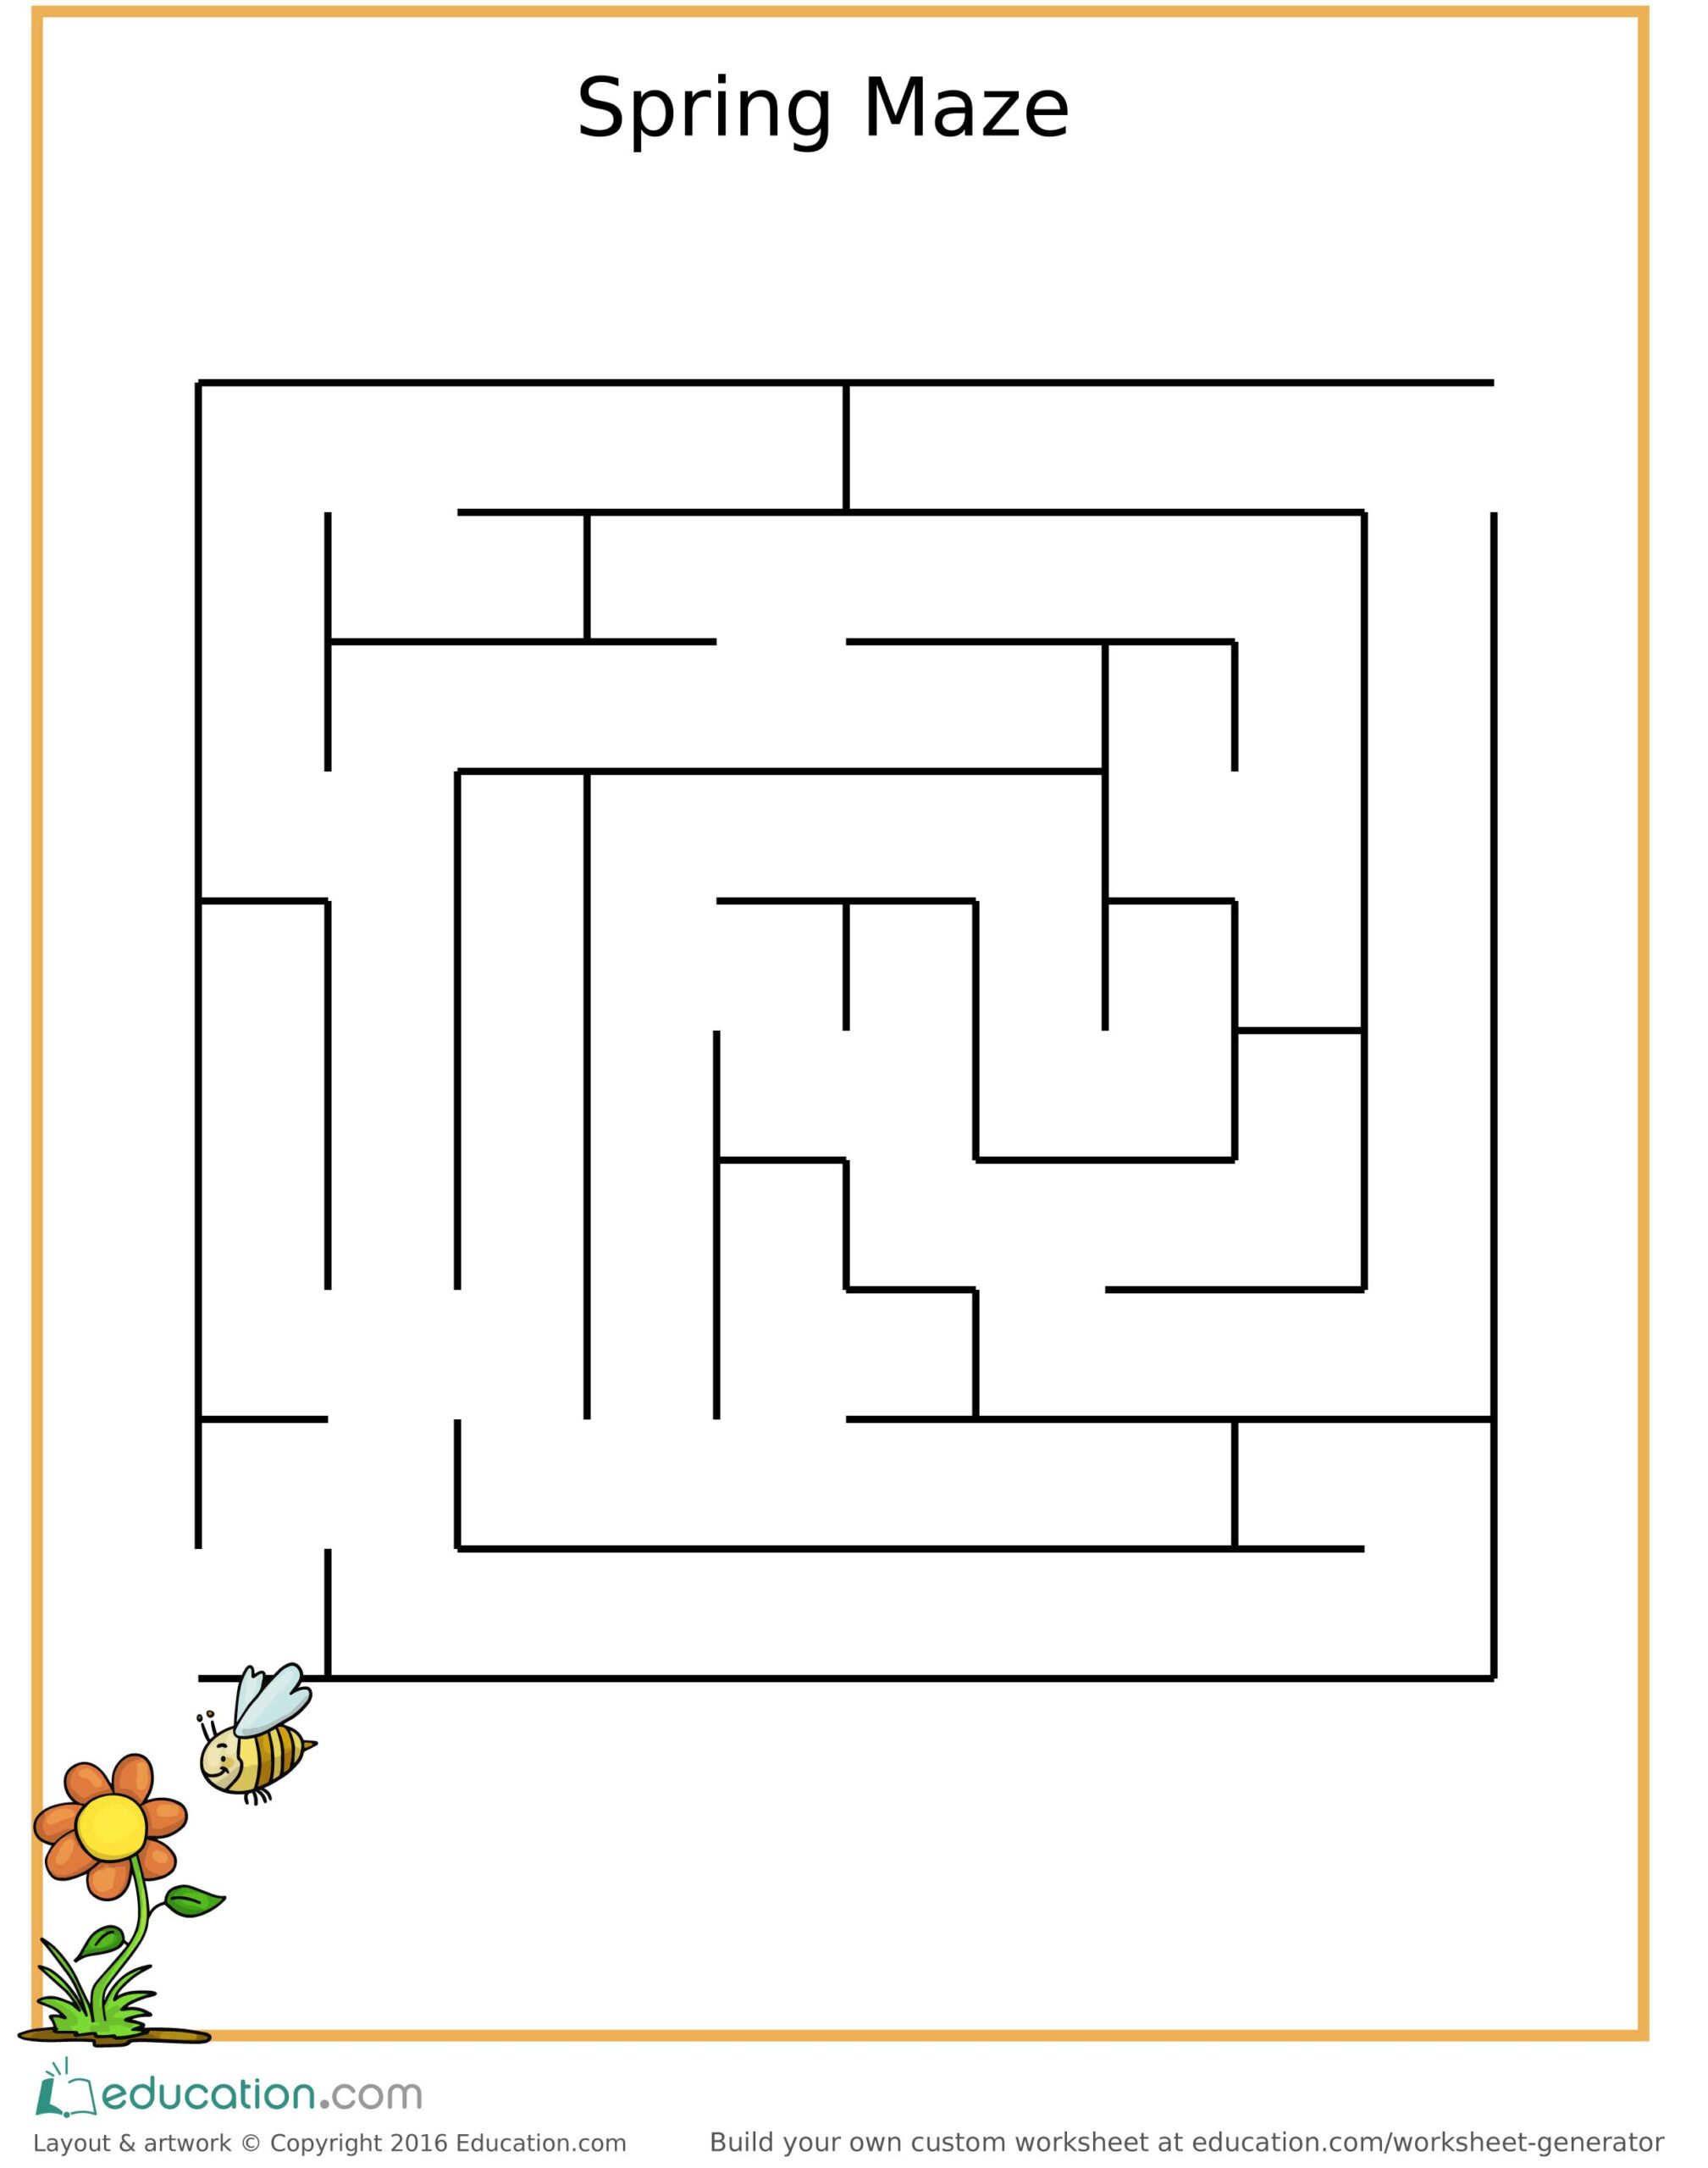 Fun Spring Maze for Children! (Free Printable)